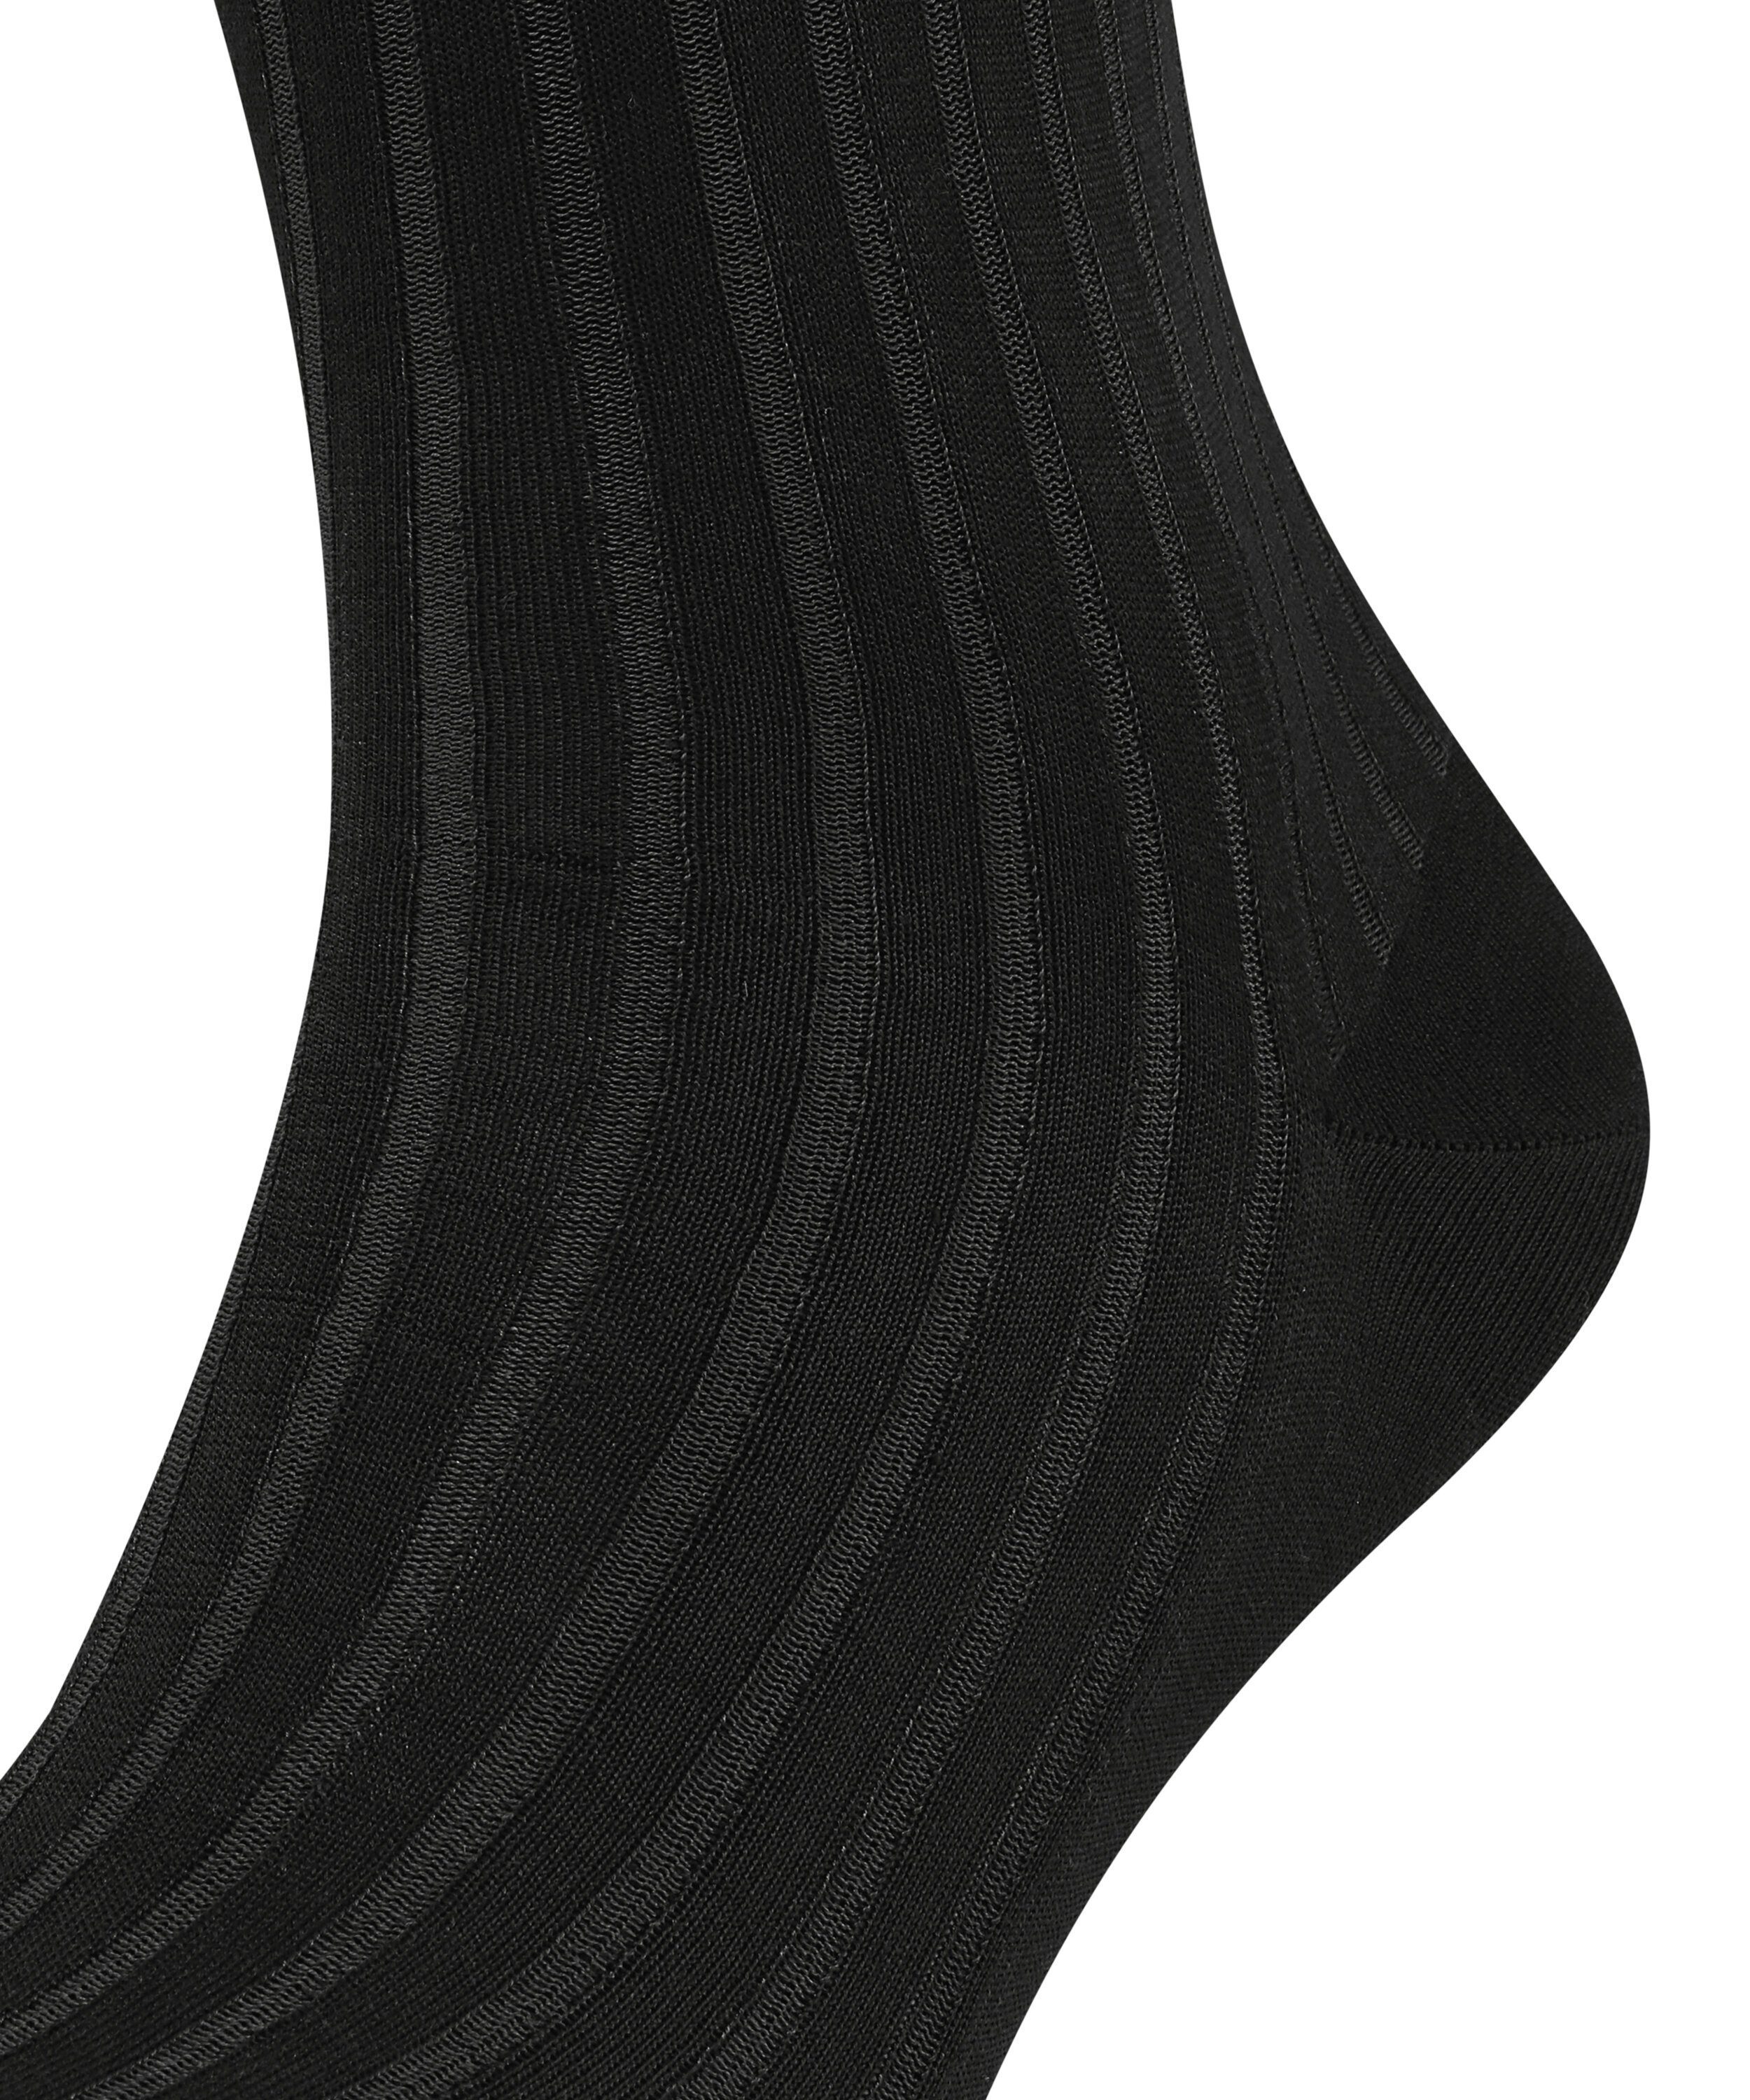 (3030) Shadow FALKE (1-Paar) grey-white Socken